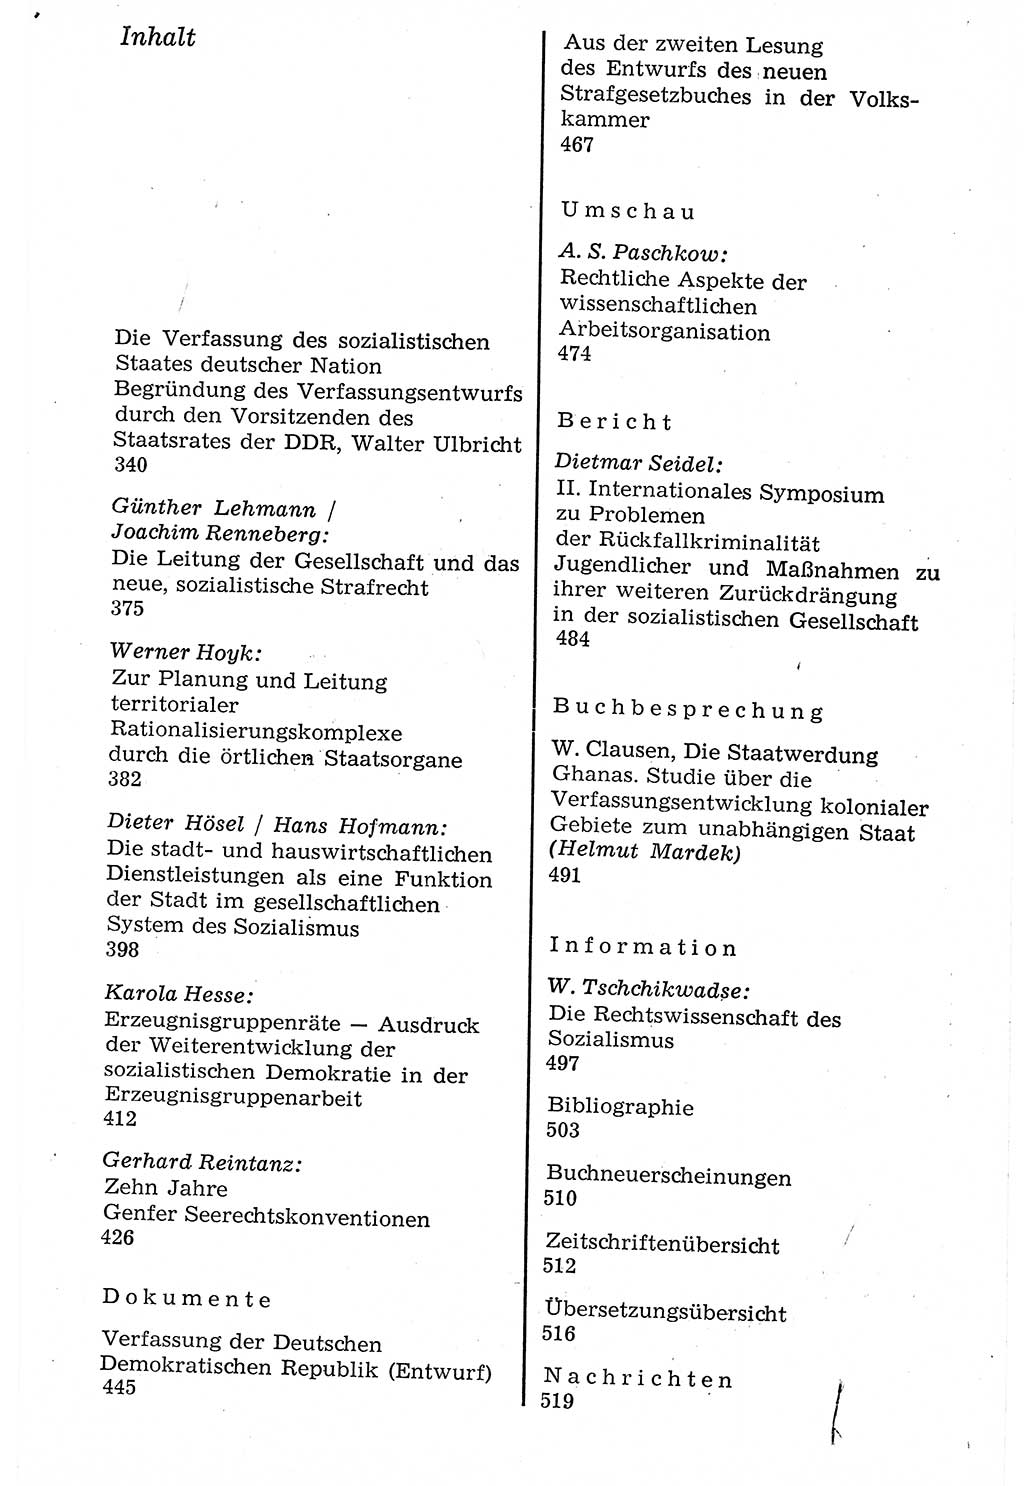 Staat und Recht (StuR), 17. Jahrgang [Deutsche Demokratische Republik (DDR)] 1968, Seite 339 (StuR DDR 1968, S. 339)